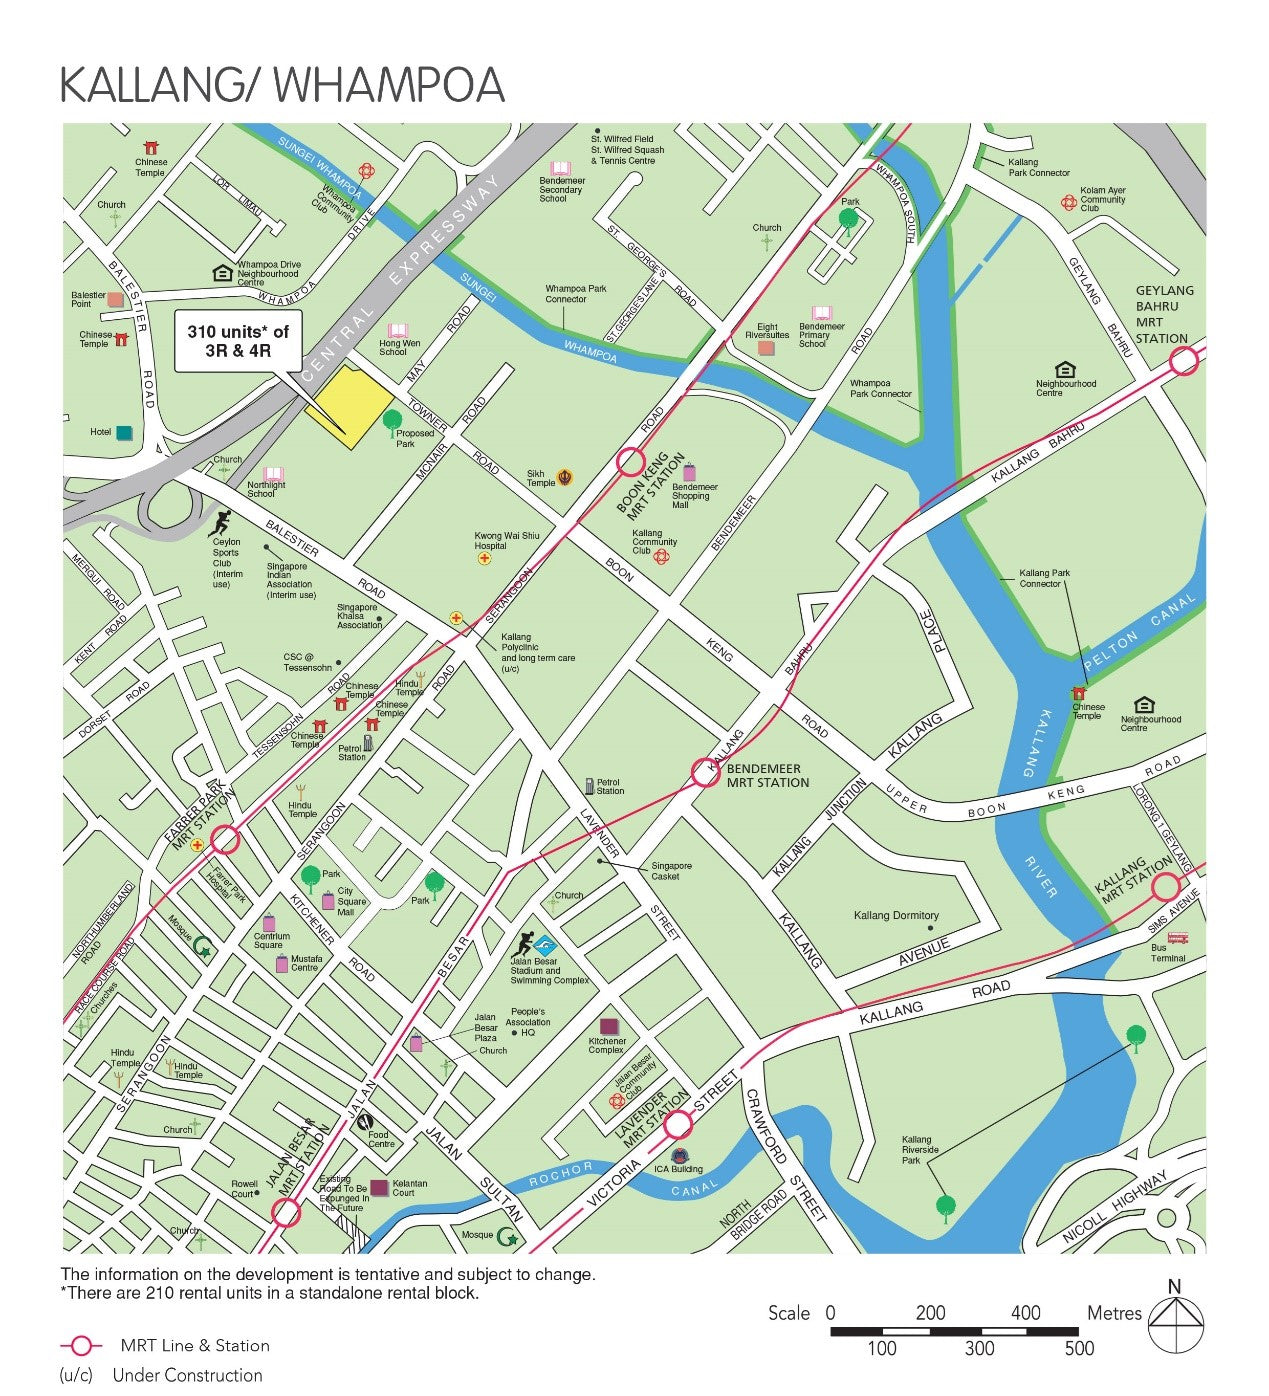 BTO Kallang Whampoa 202108